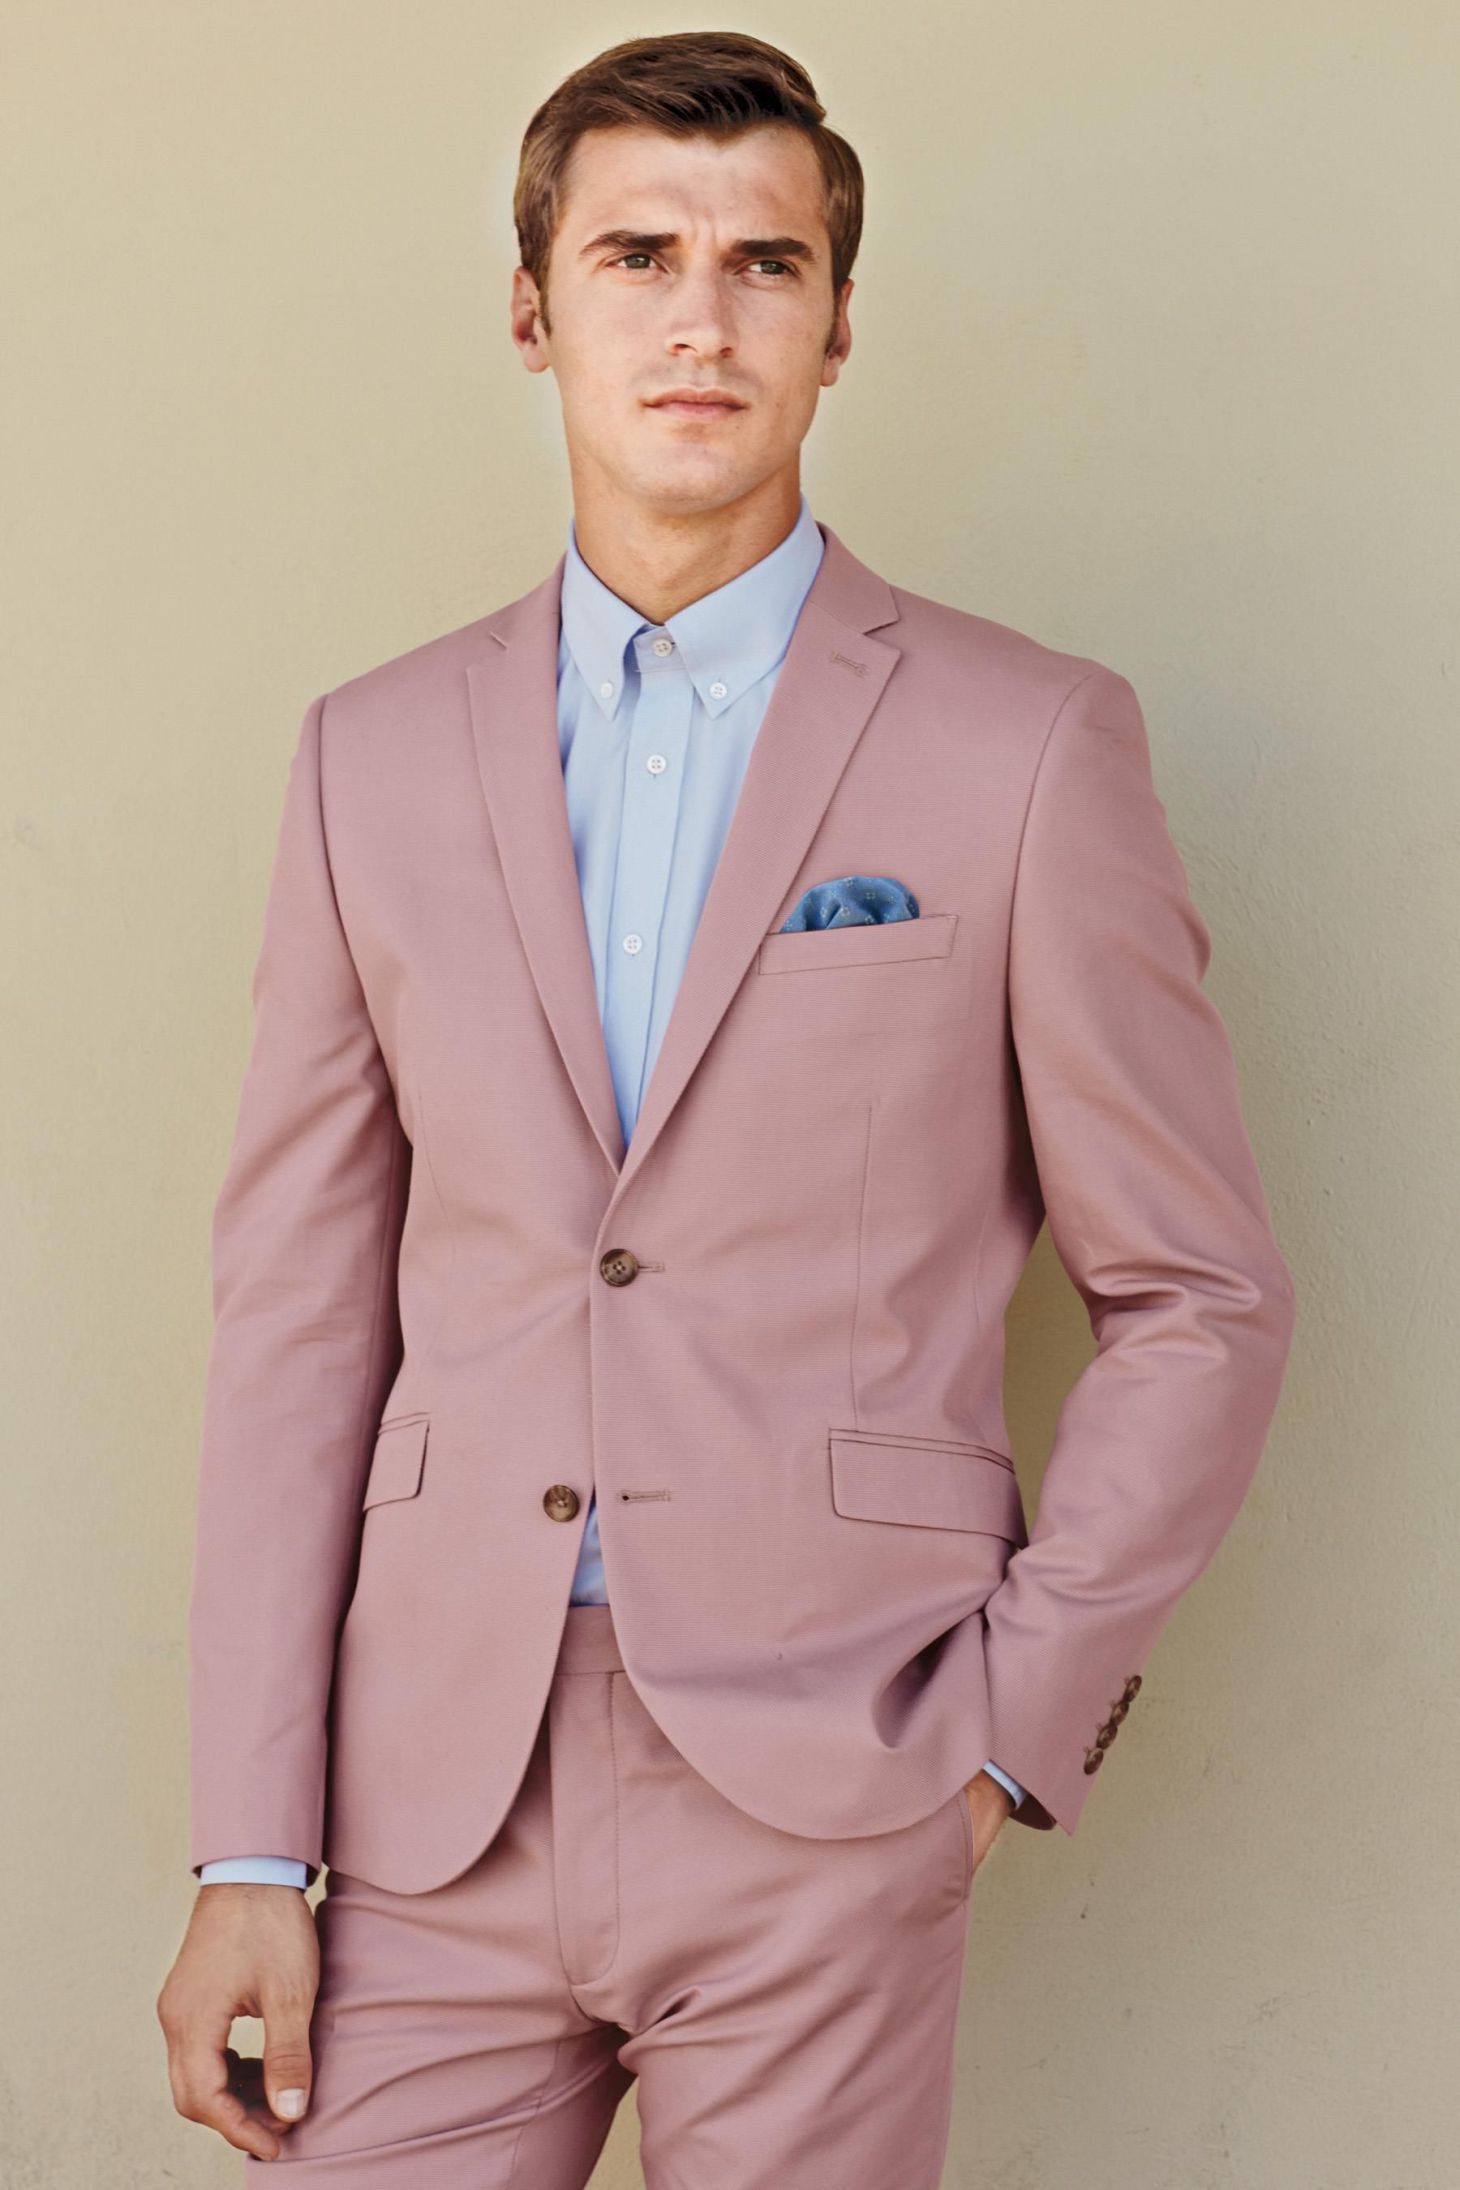 Light Grey Suit Pink Shirt - photos and vectors